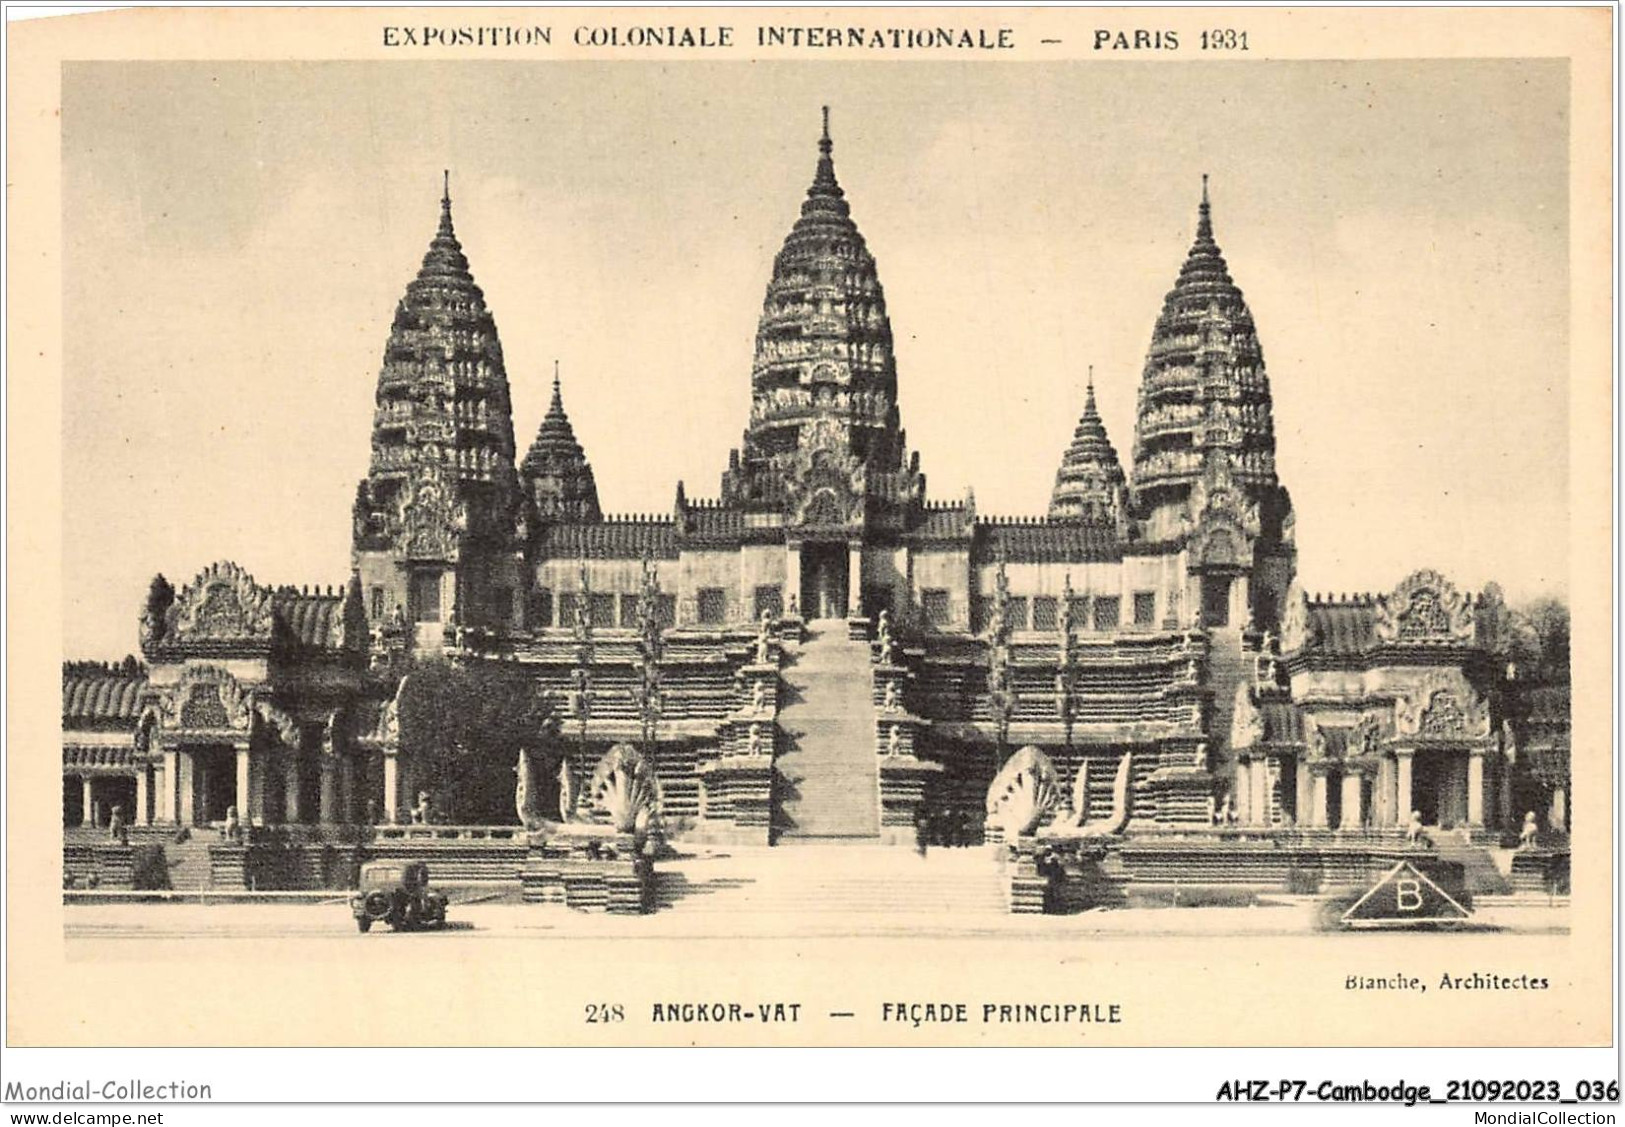 AHZP7-CAMBODGE-0614 - EXPOSITION COLONIALE INTERNATIONALE - PARIS 1931 - ANGKOR-VAT - FACADE PRINCIPALE - Camboya